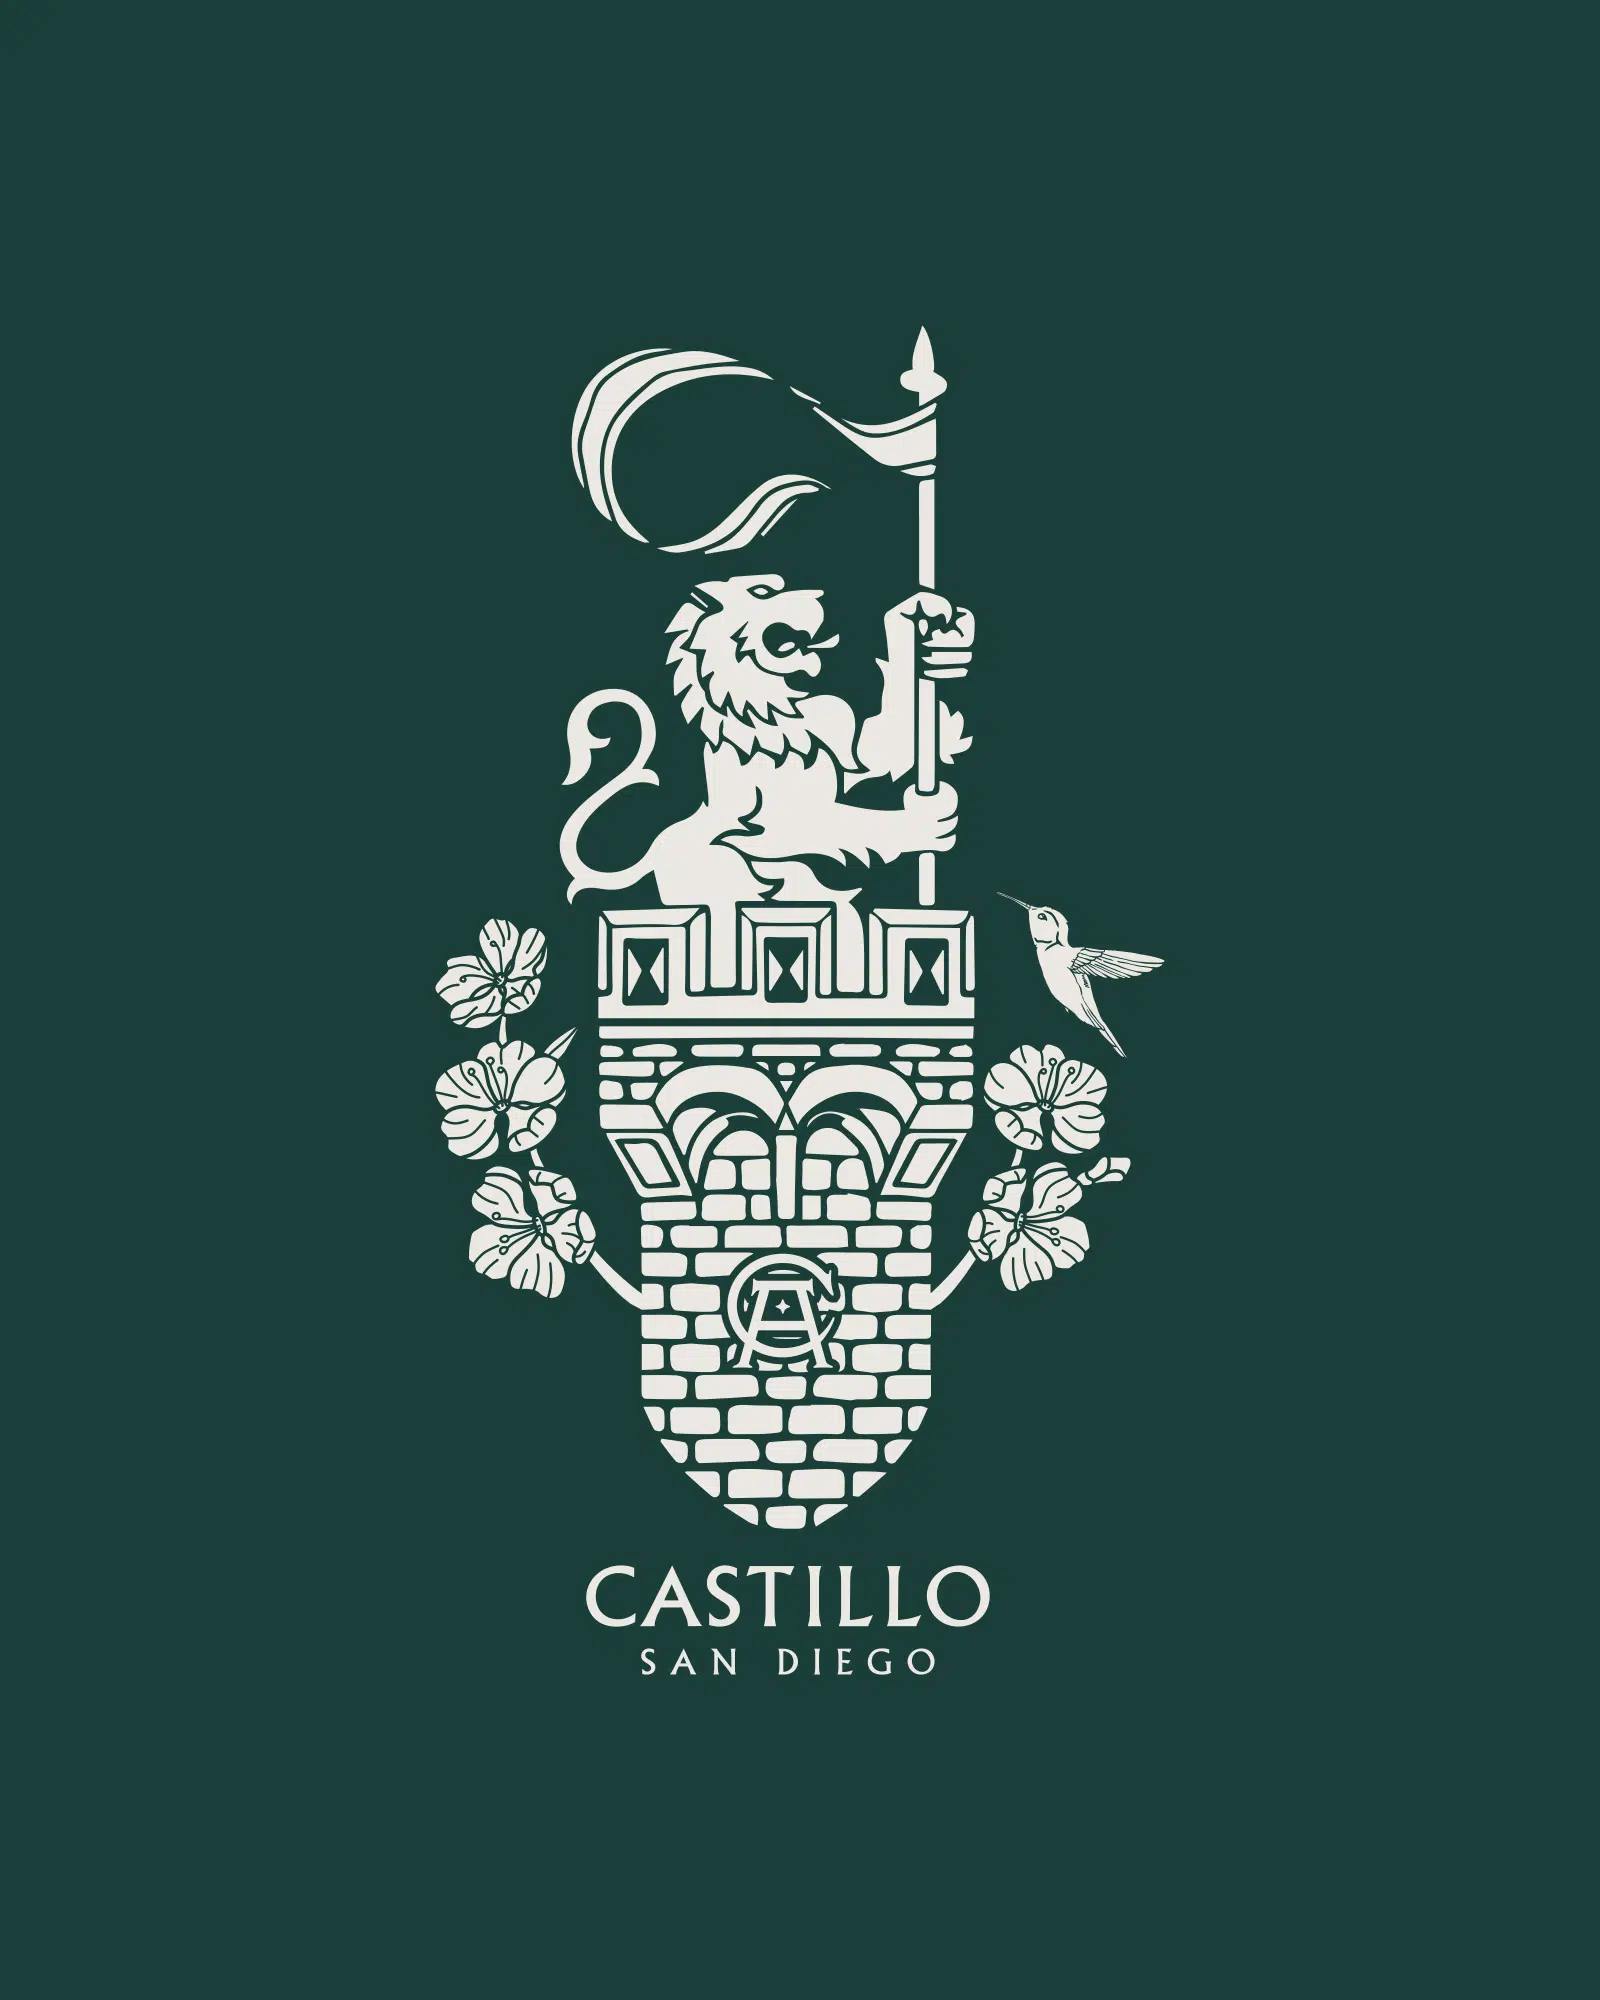 Castillo / Branding Program 